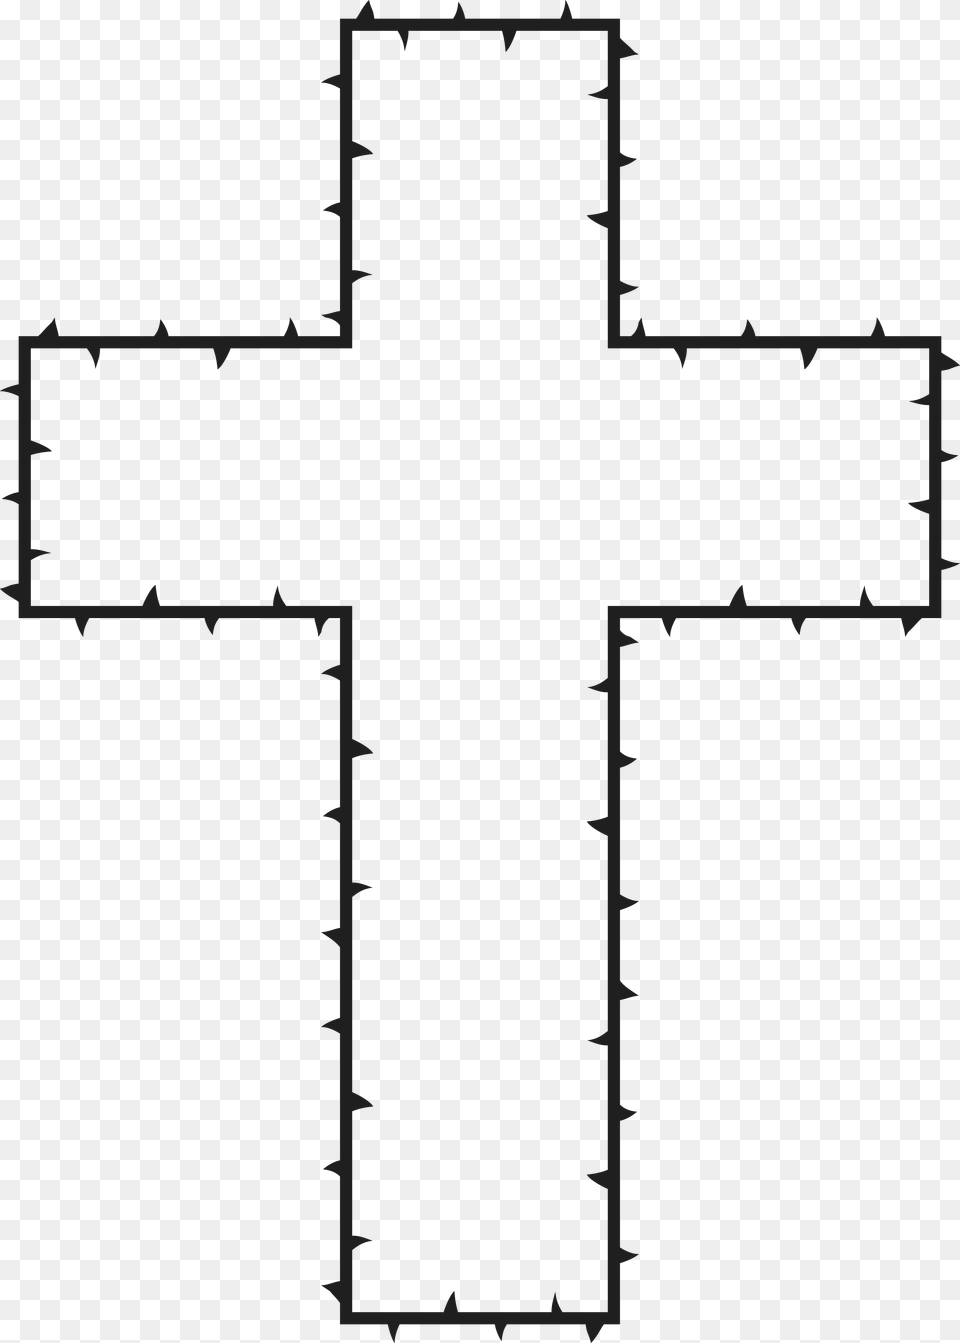 Clipart Of A Cross Made Of Thorns Cruz Sem Fundo, Symbol Png